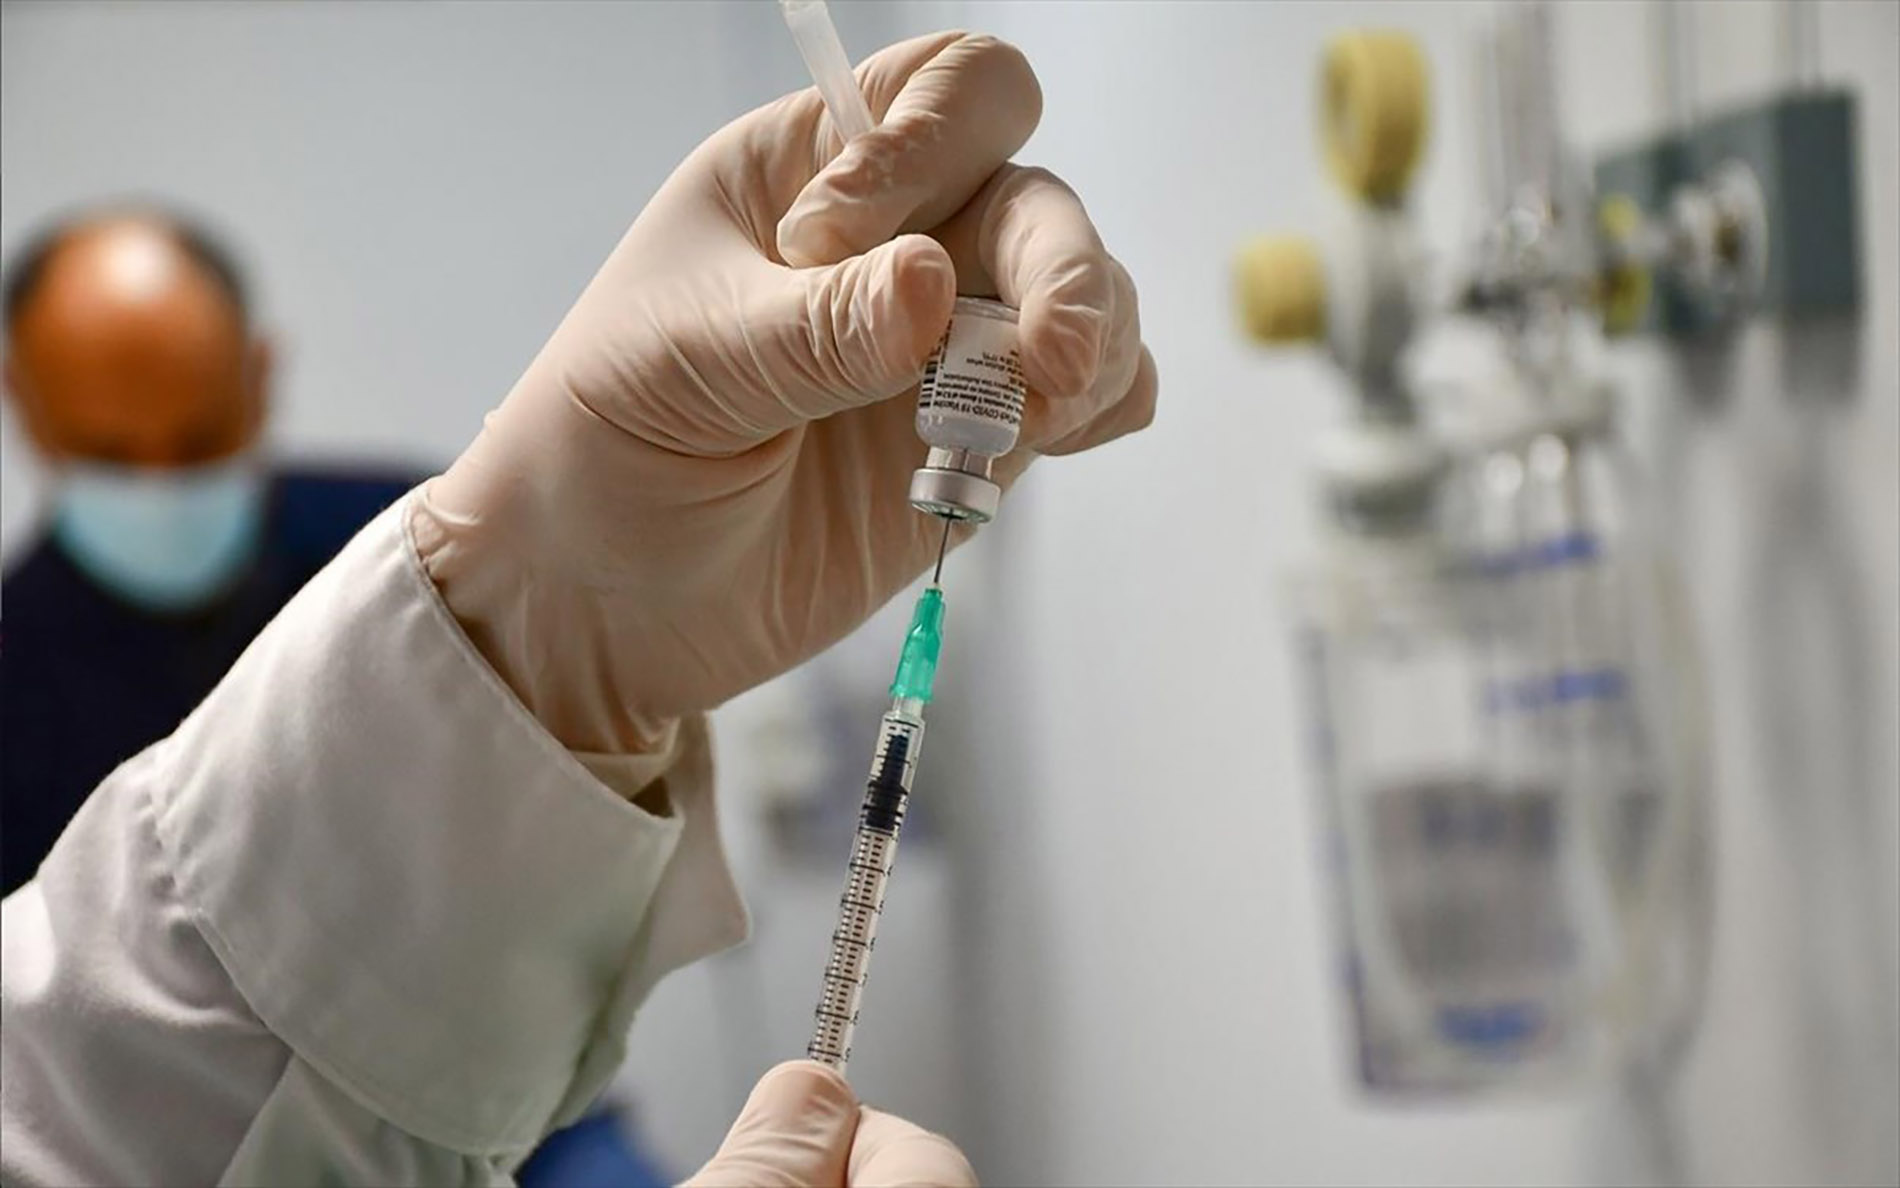 وزارة الصحة اليونانية تطلق منصة إلكترونية للقاح ضد فيروس كورونا لأعمار مختلفة 